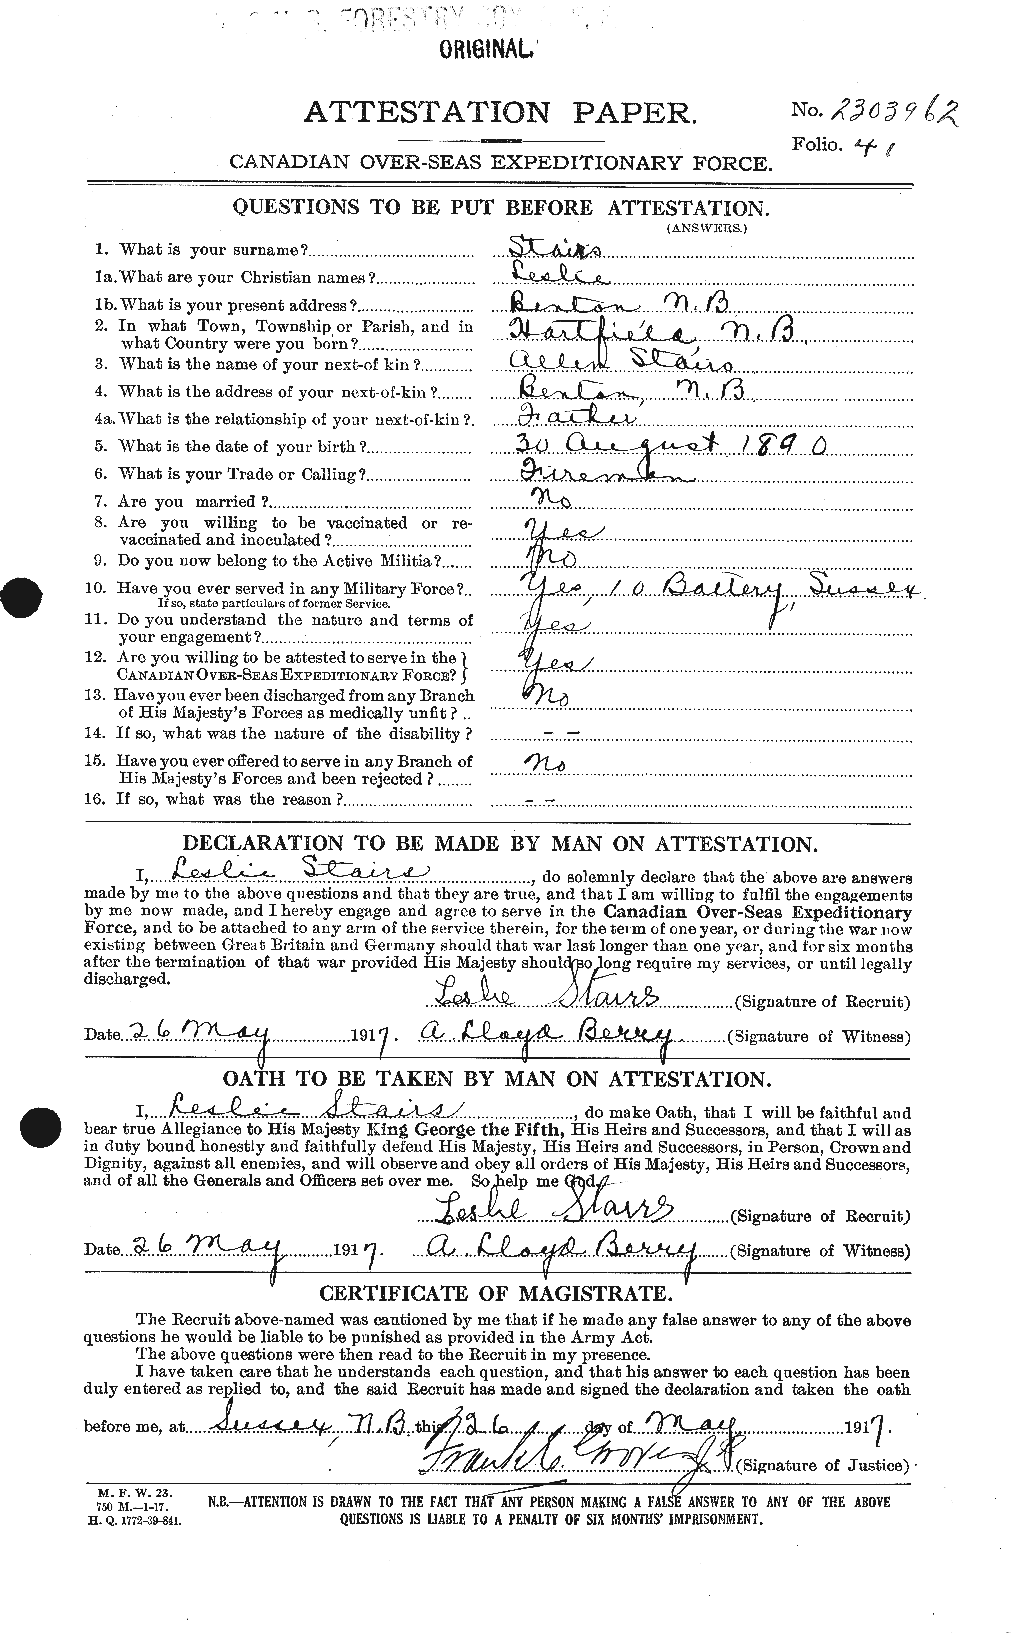 Dossiers du Personnel de la Première Guerre mondiale - CEC 116799a